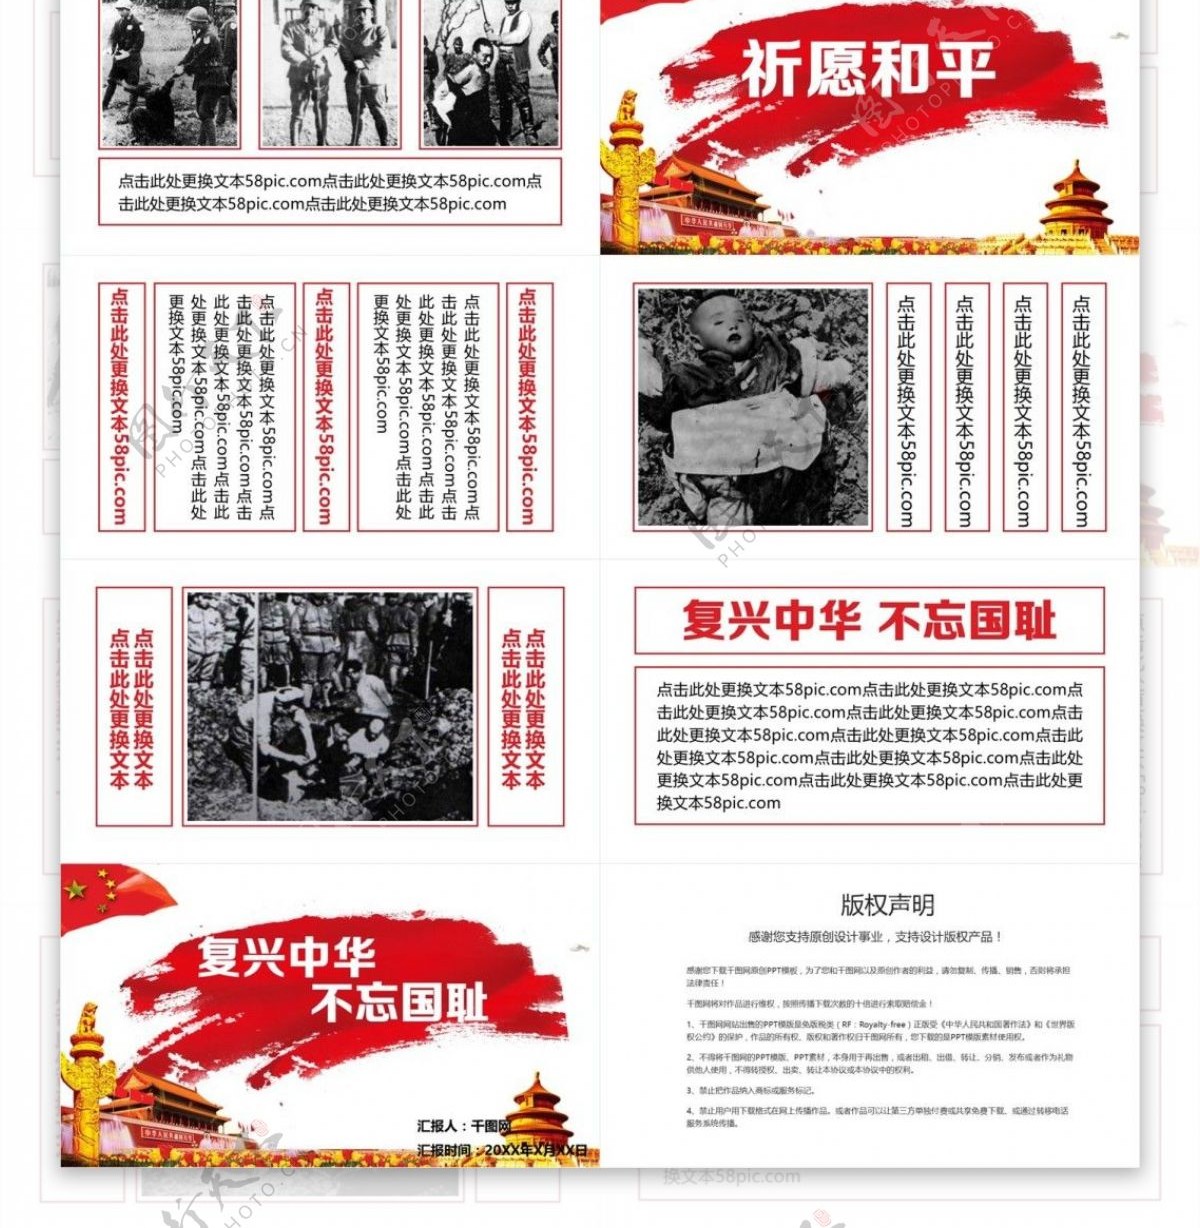 红色线框纪念南京大屠杀PPT模板